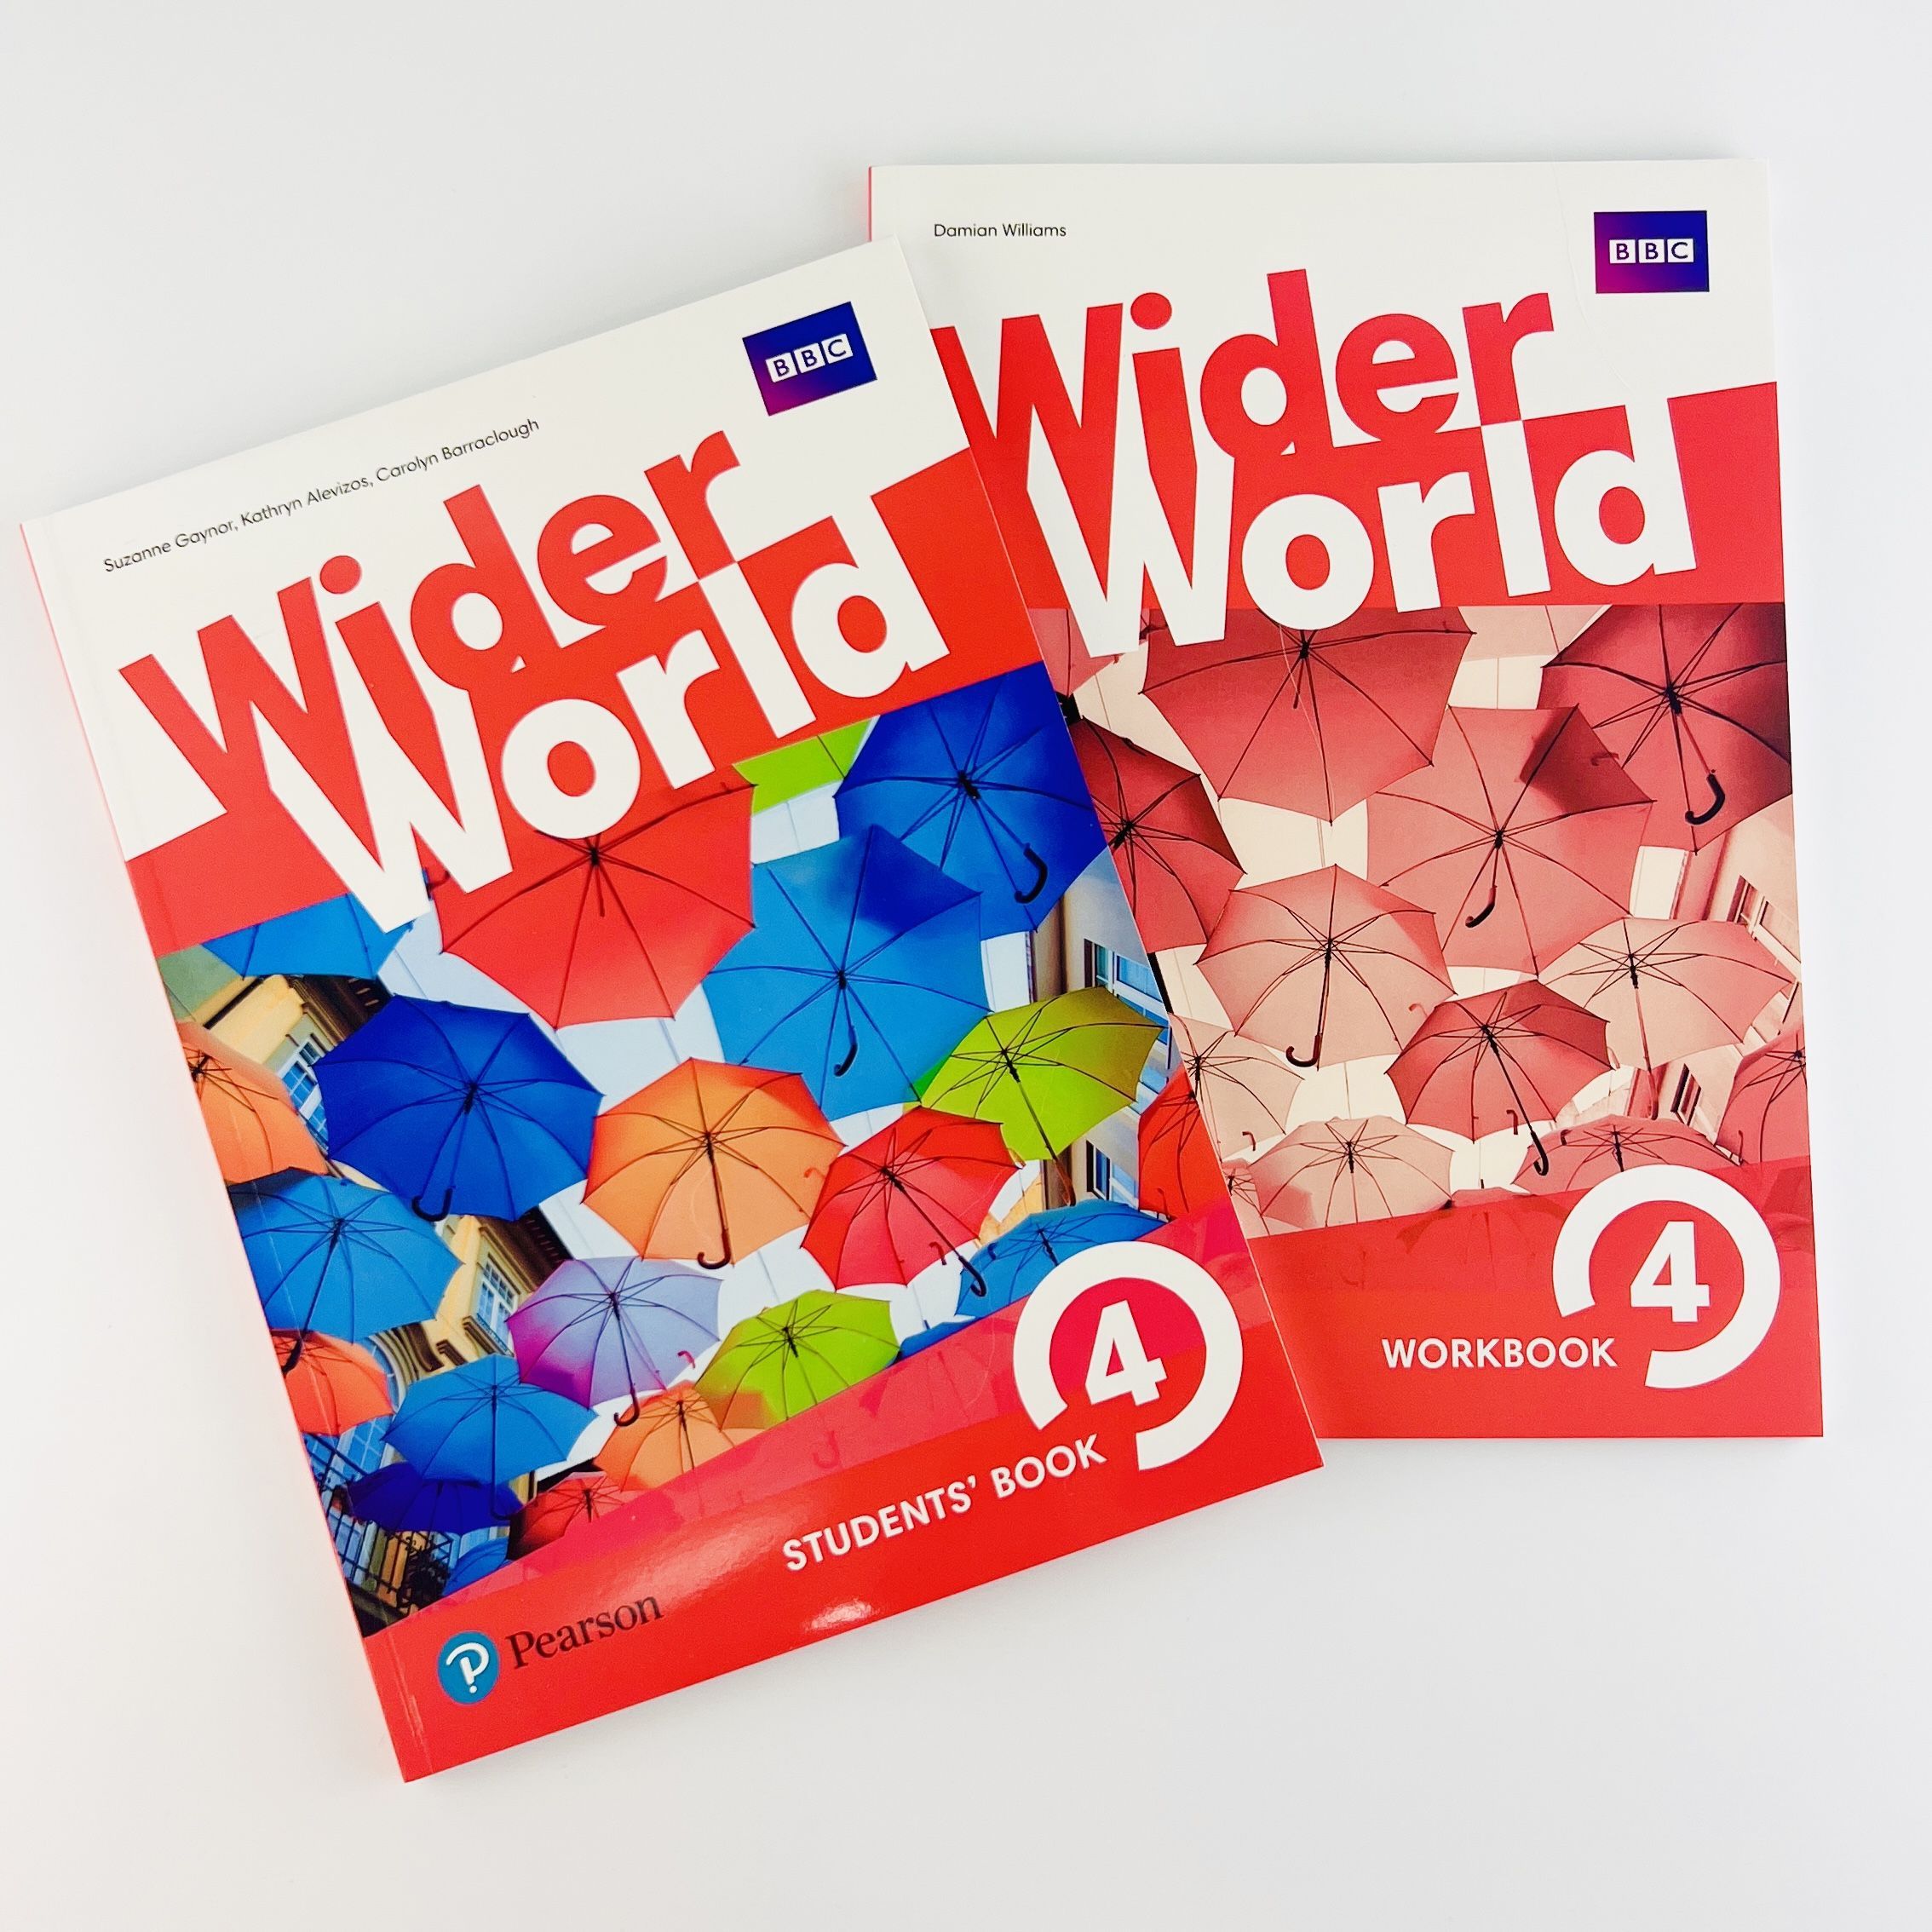 Wider world учебник. Учебник wider World 4. Workbook евро учебник. Wider World 4 Workbook. Учебник студент бук.